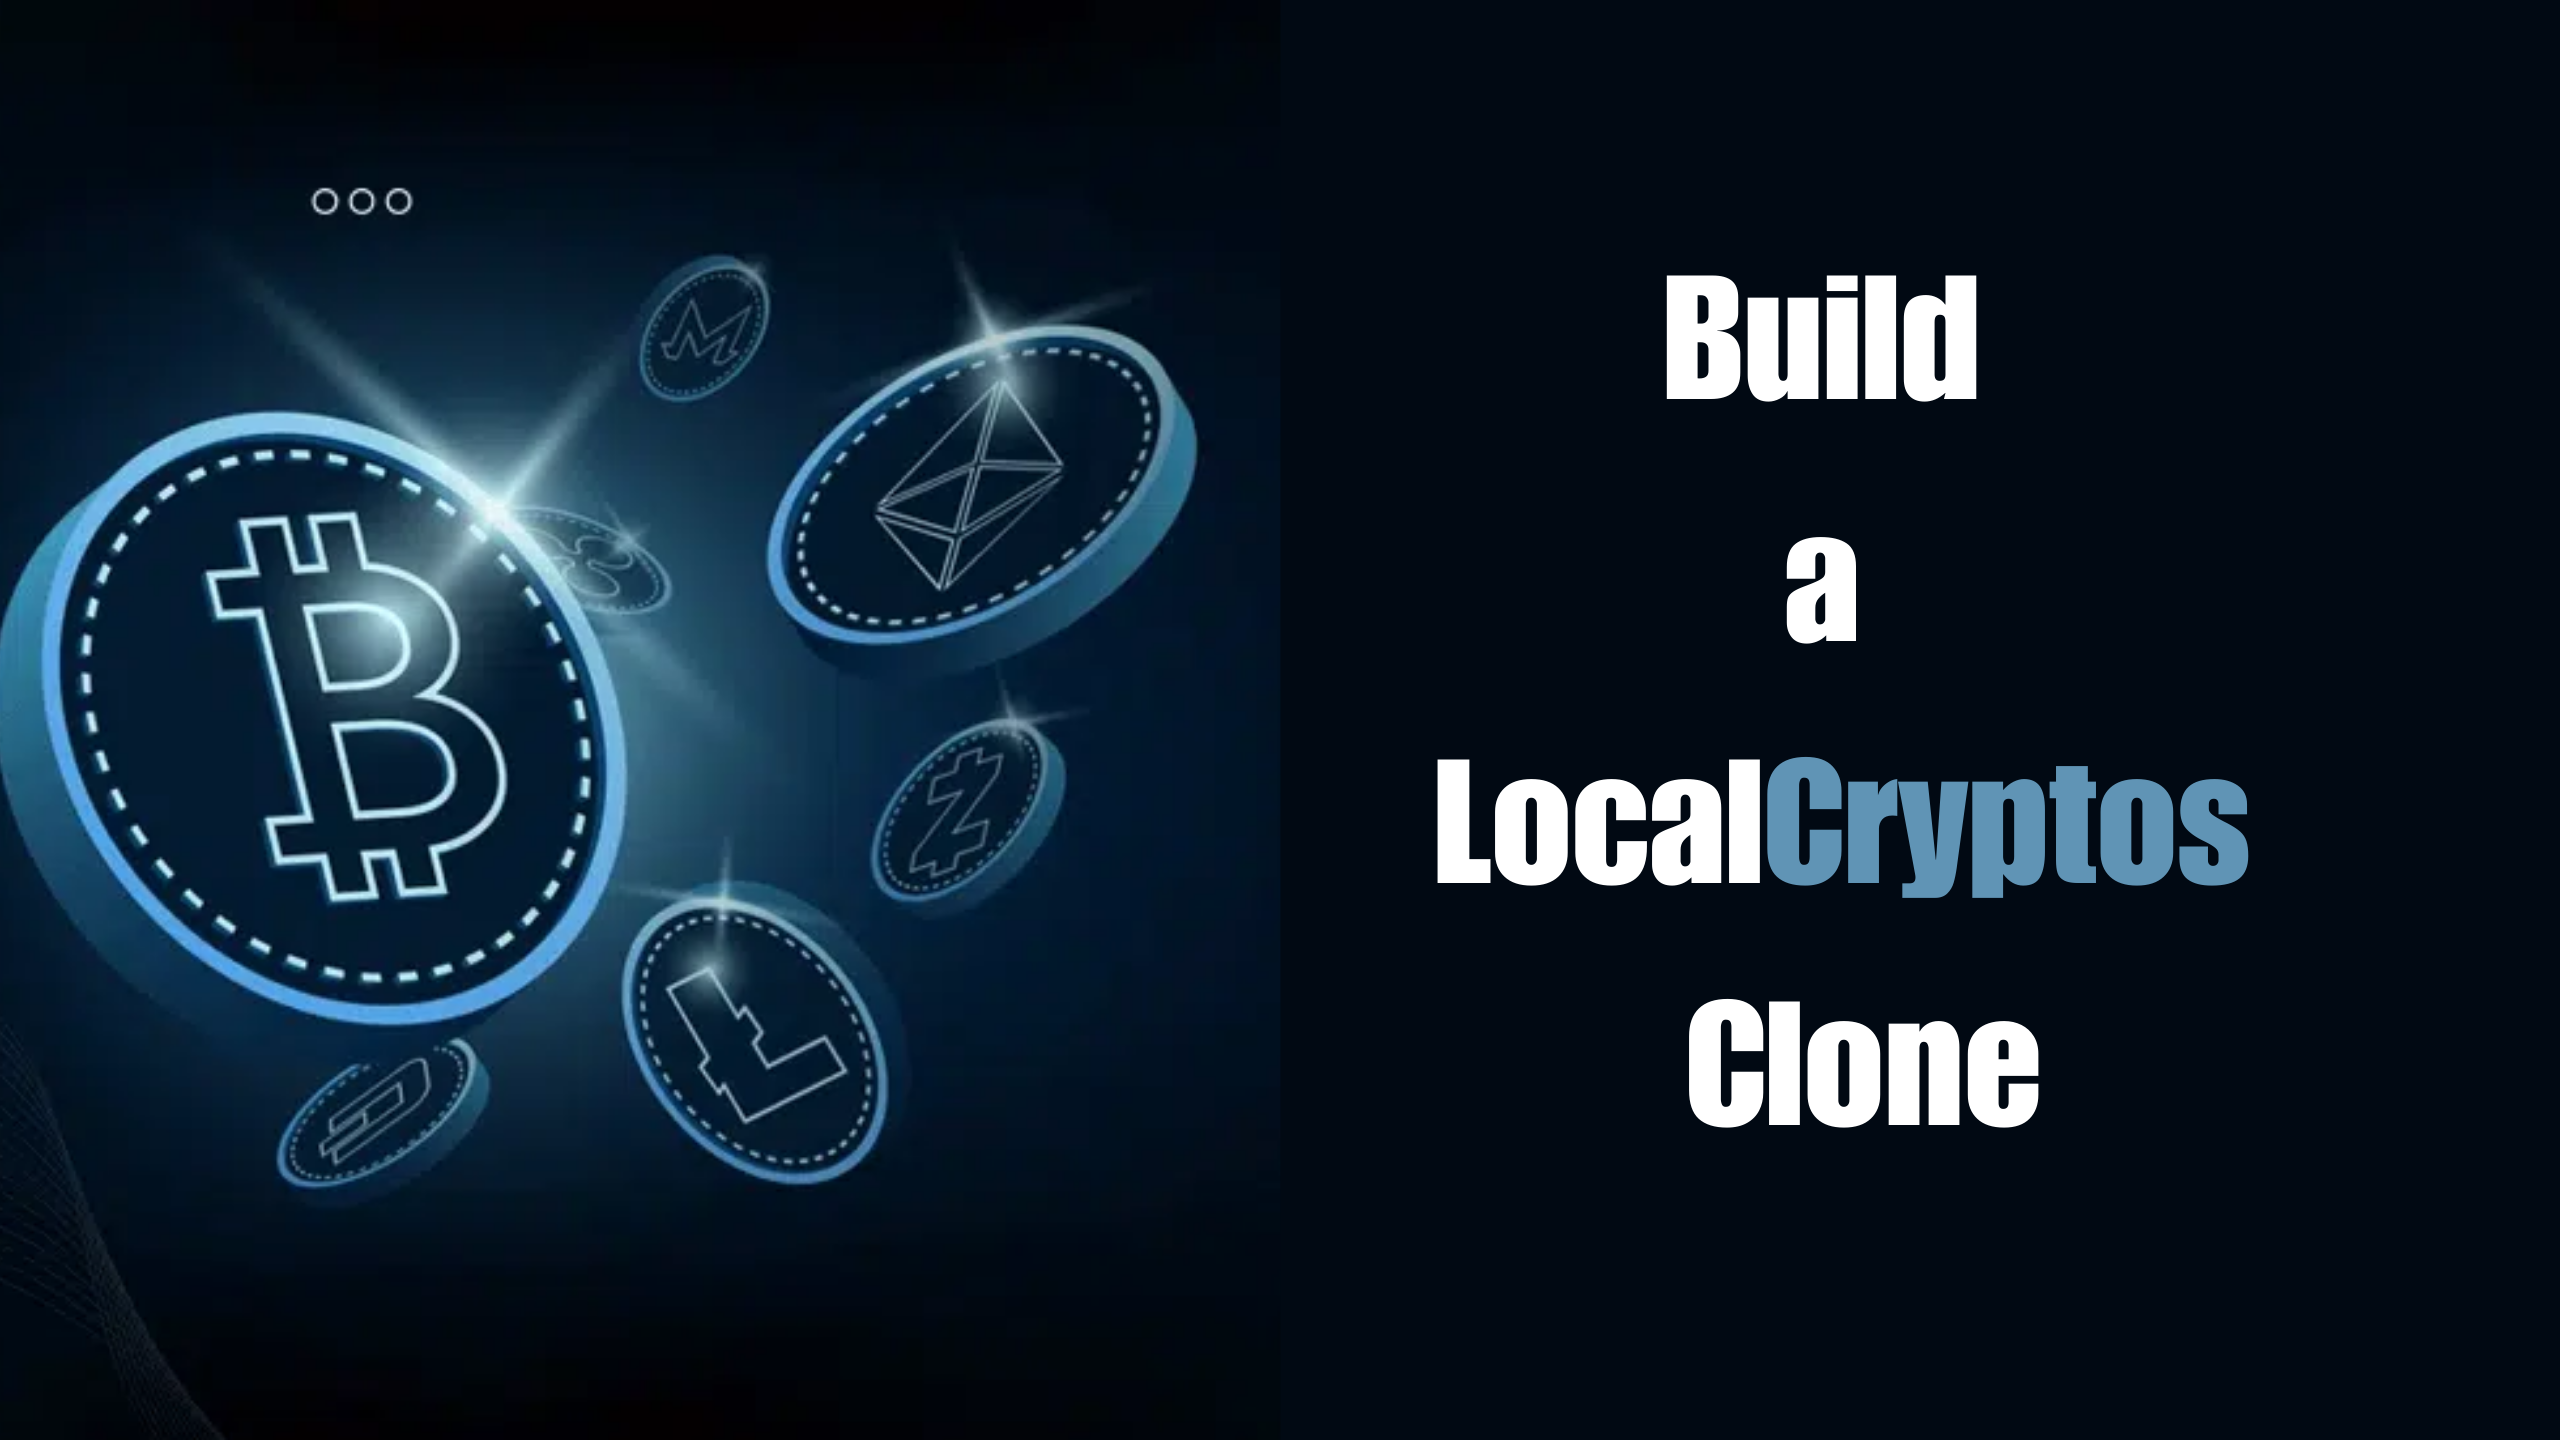 Build a LocalCryptos Clone.